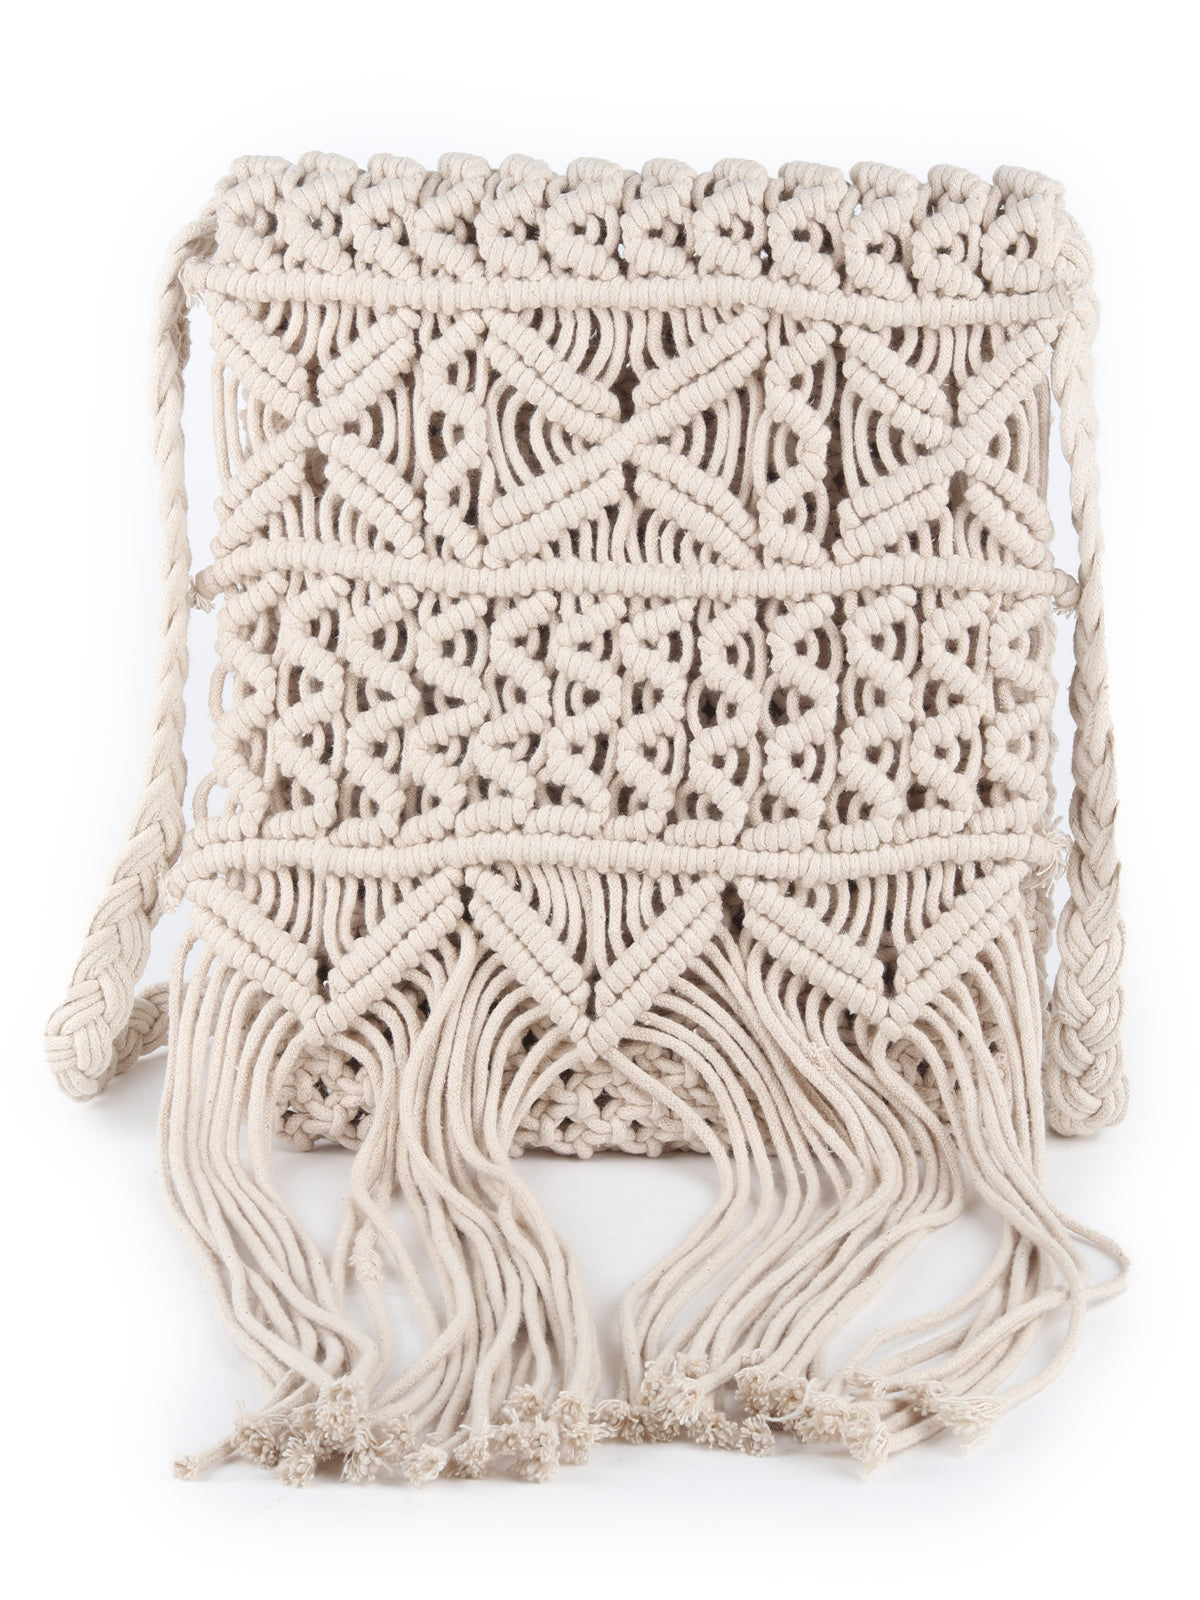 Odette White Woven Handmade Sling Bag for Women